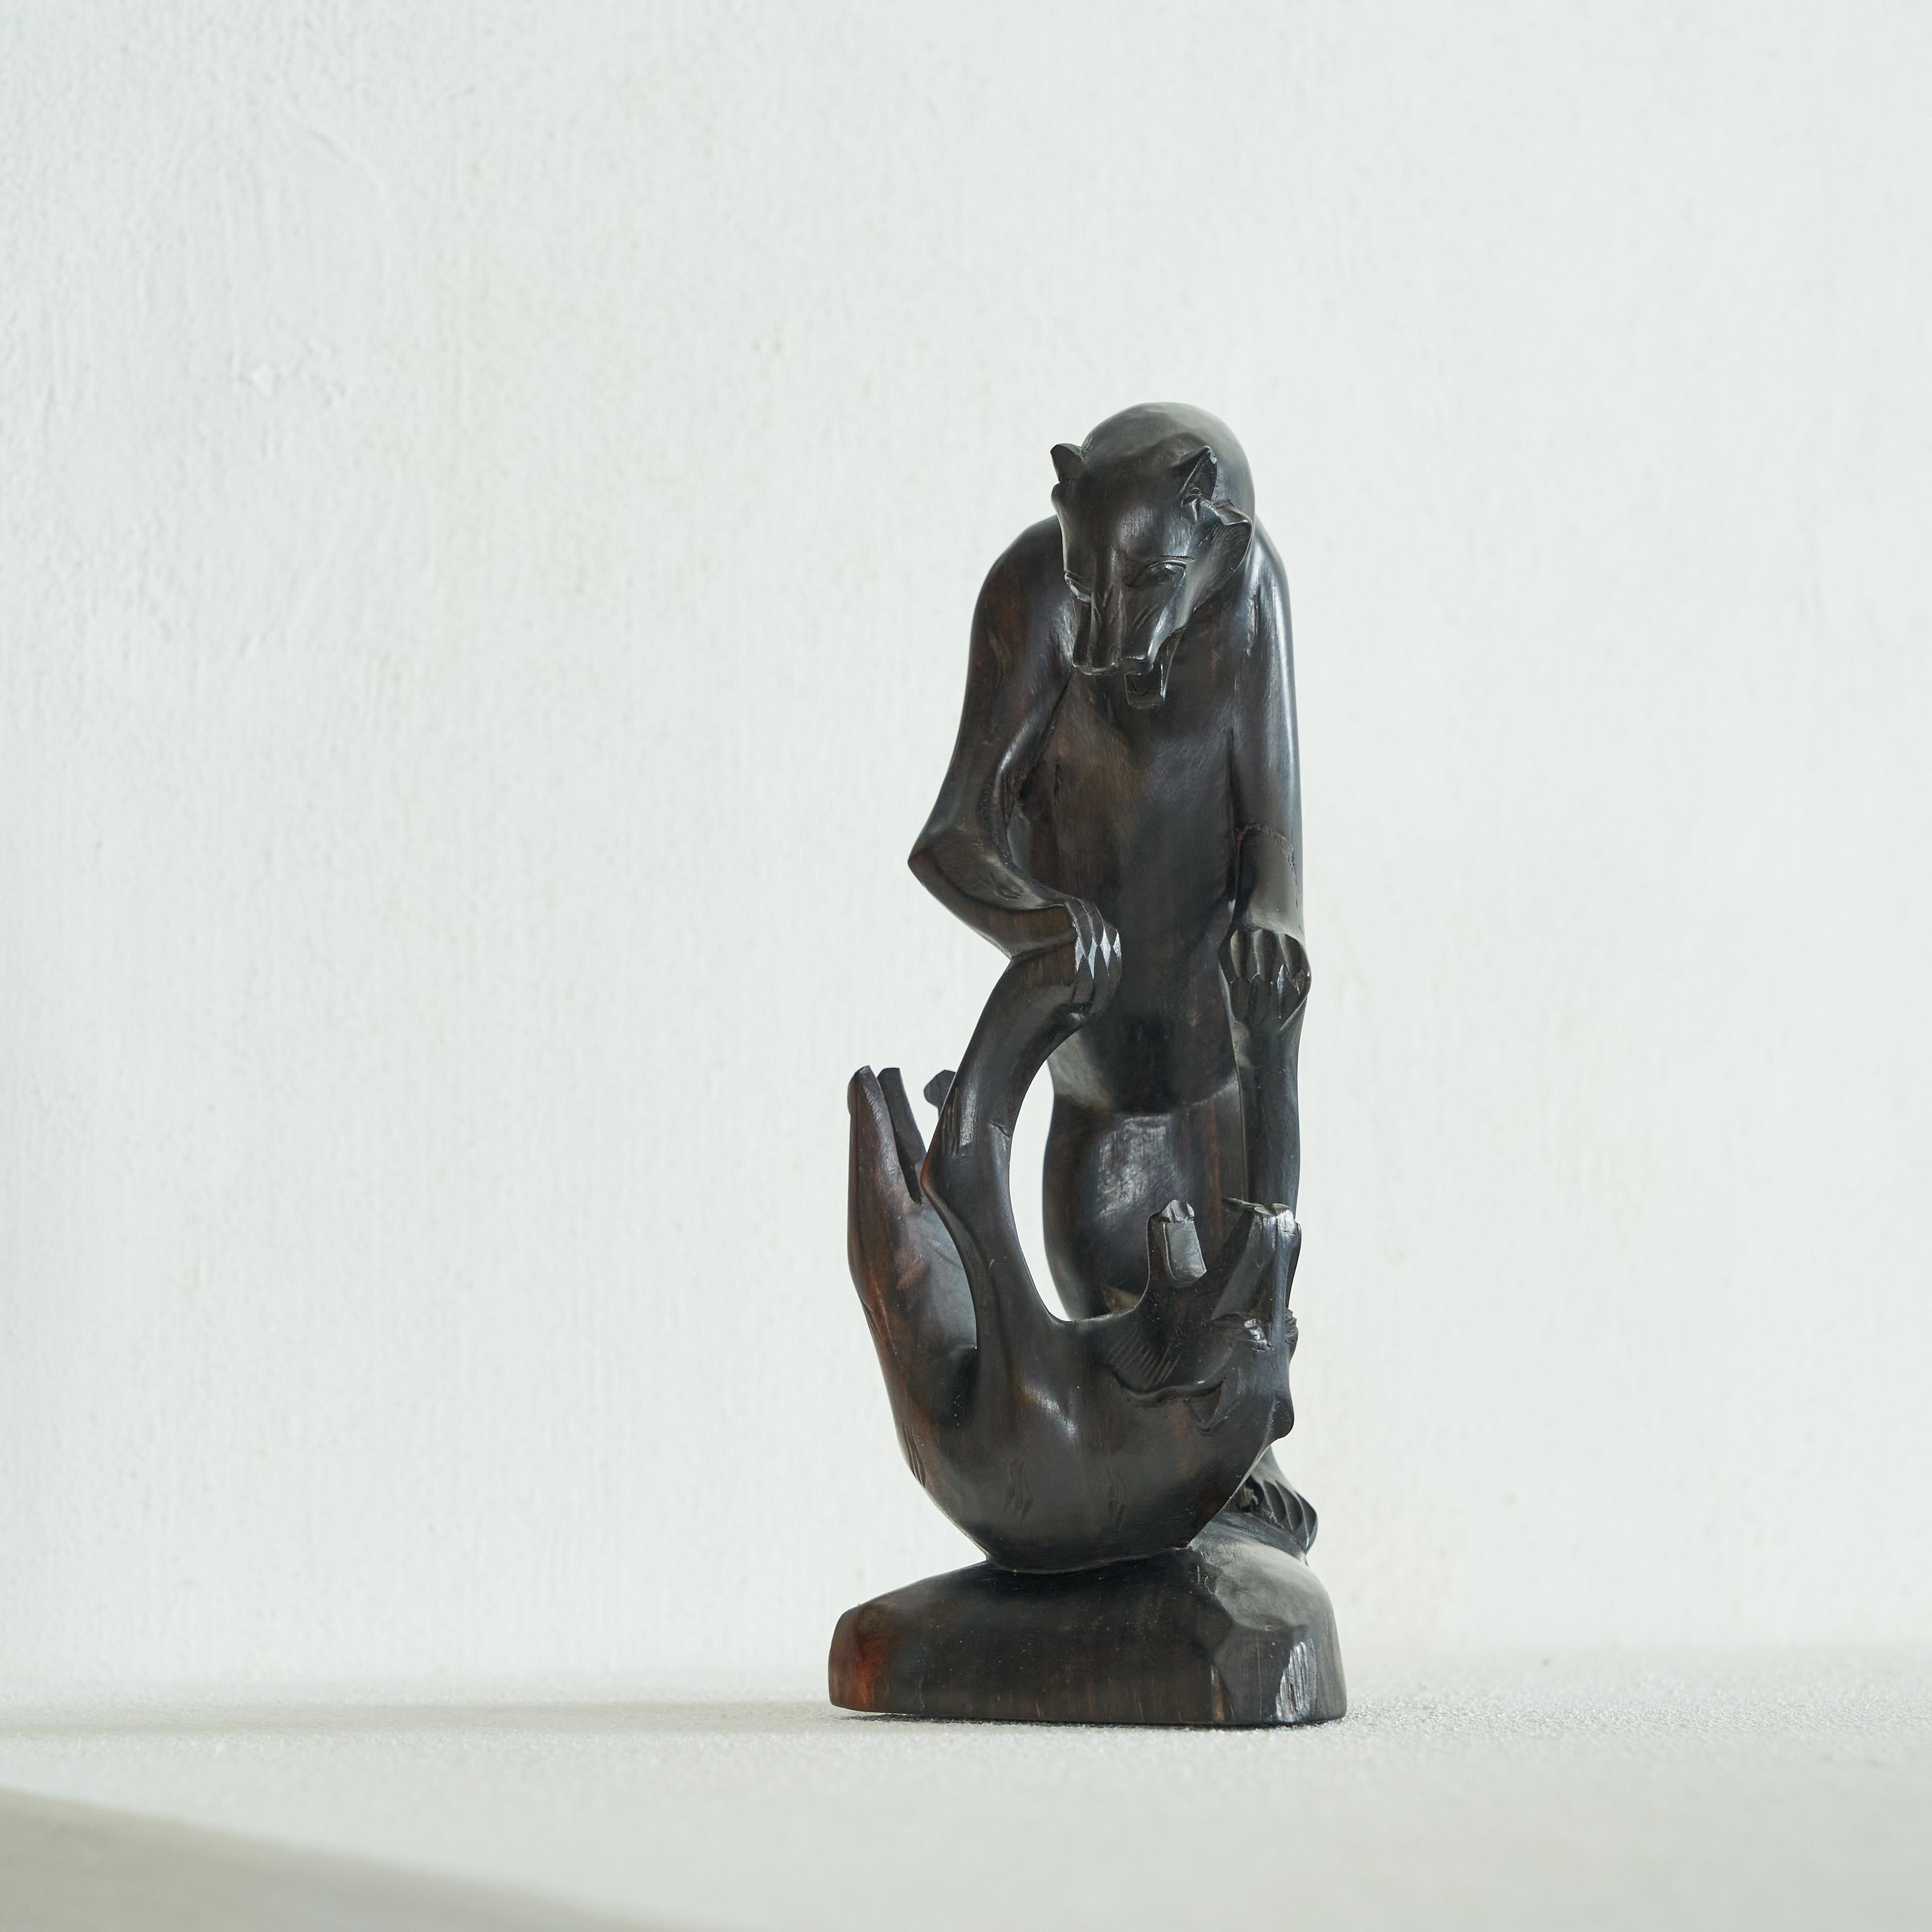 Art-Deco-Skulptur der kämpfenden Panther aus Holz. Erste Hälfte des 20. Jahrhunderts.

Wunderschön geschnitztes Art-Deco-Kunstwerk, das zwei kämpfende Panther darstellt. Hergestellt aus schönem dunklem Holz.

Dynamisch und lebensecht in Form und